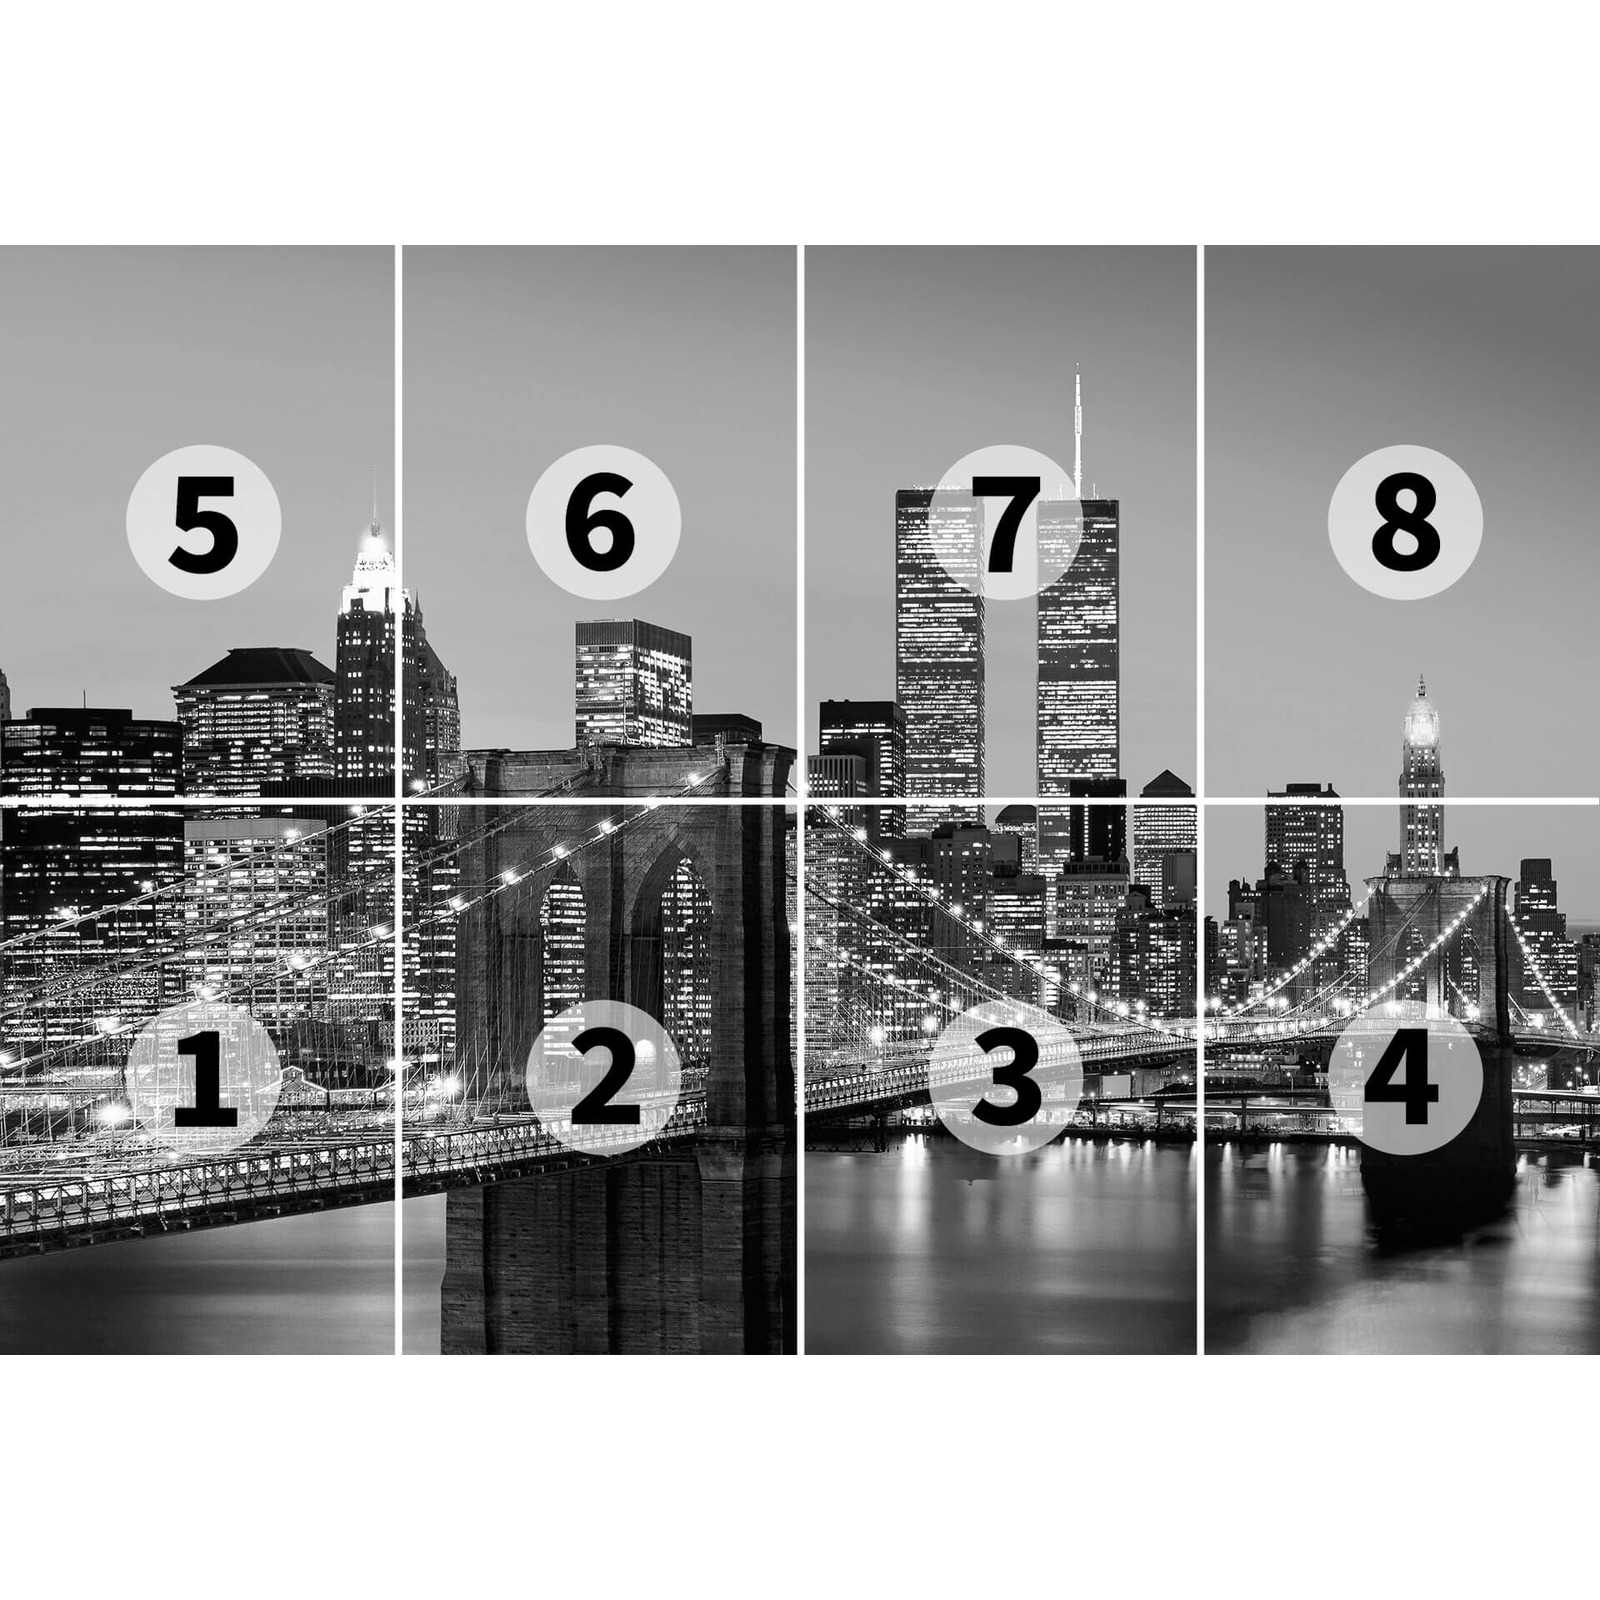             Schwarz-Weiß Fototapete Retro Manhattan Skyline
        